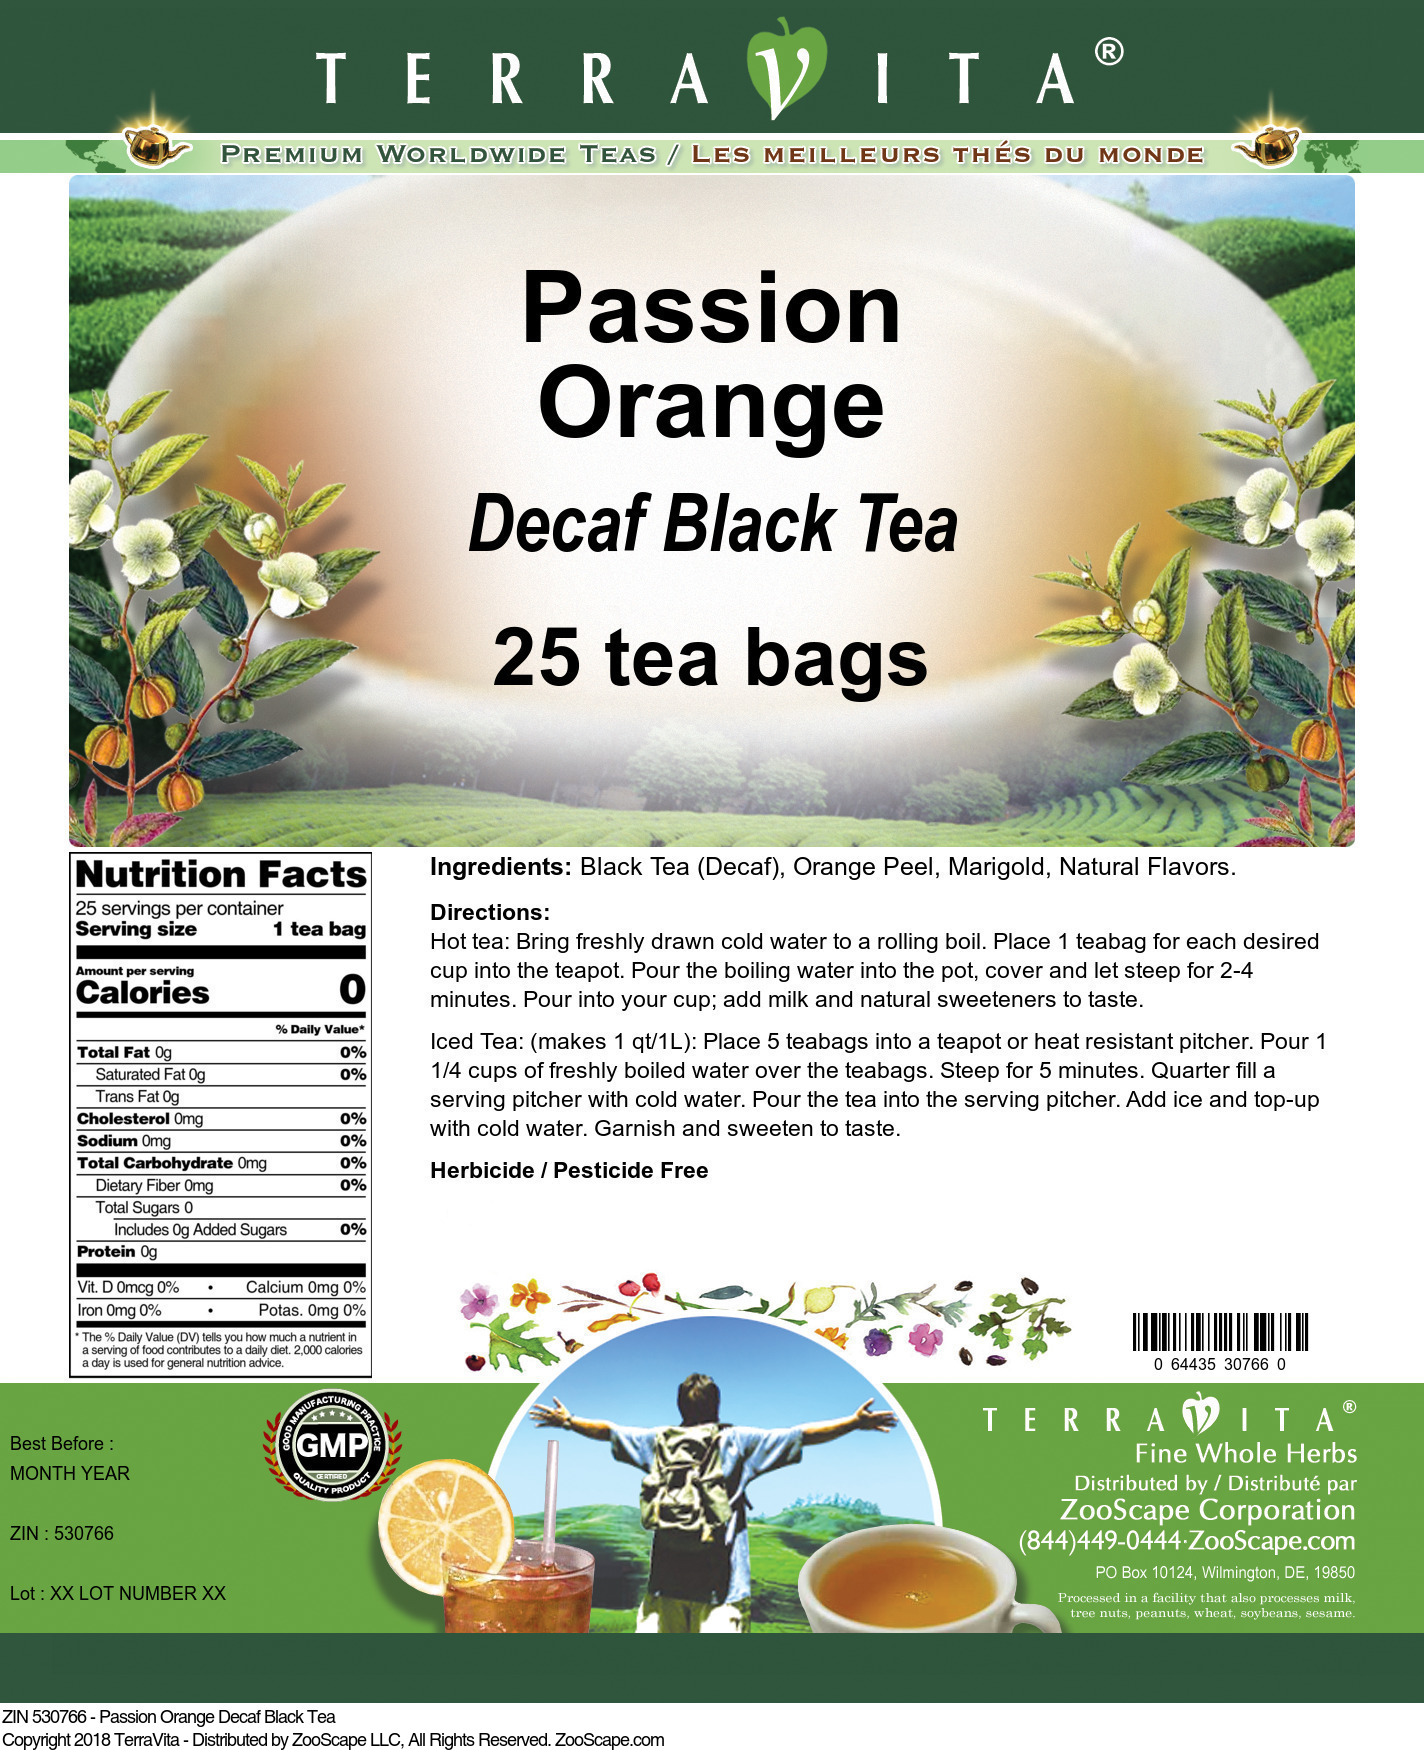 Passion Orange Decaf Black Tea - Label